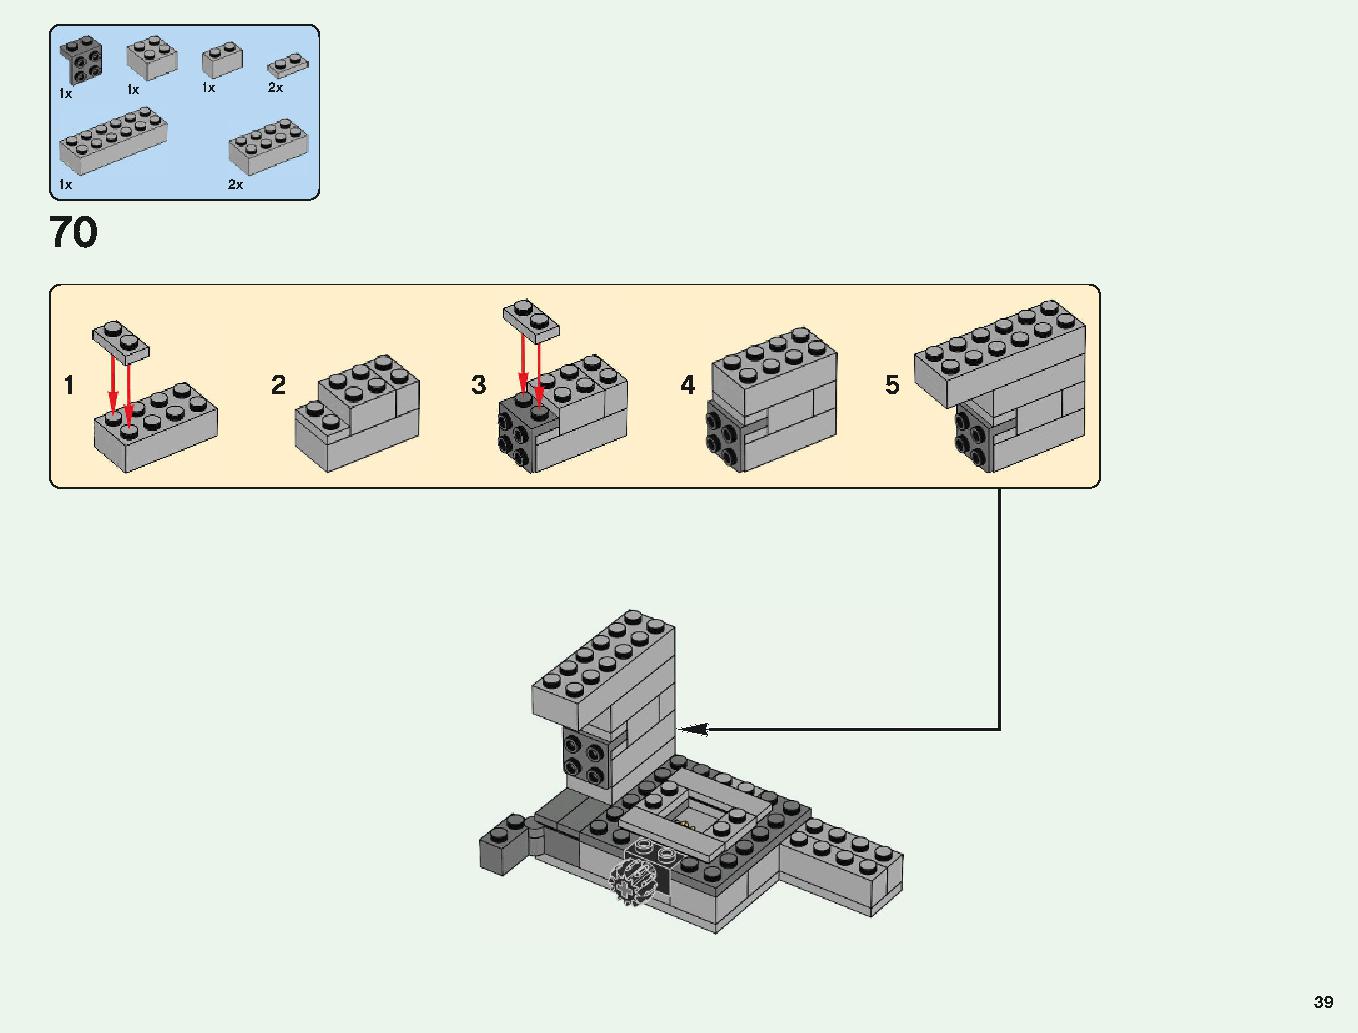 ベッドロックの冒険 21147 レゴの商品情報 レゴの説明書・組立方法 39 page